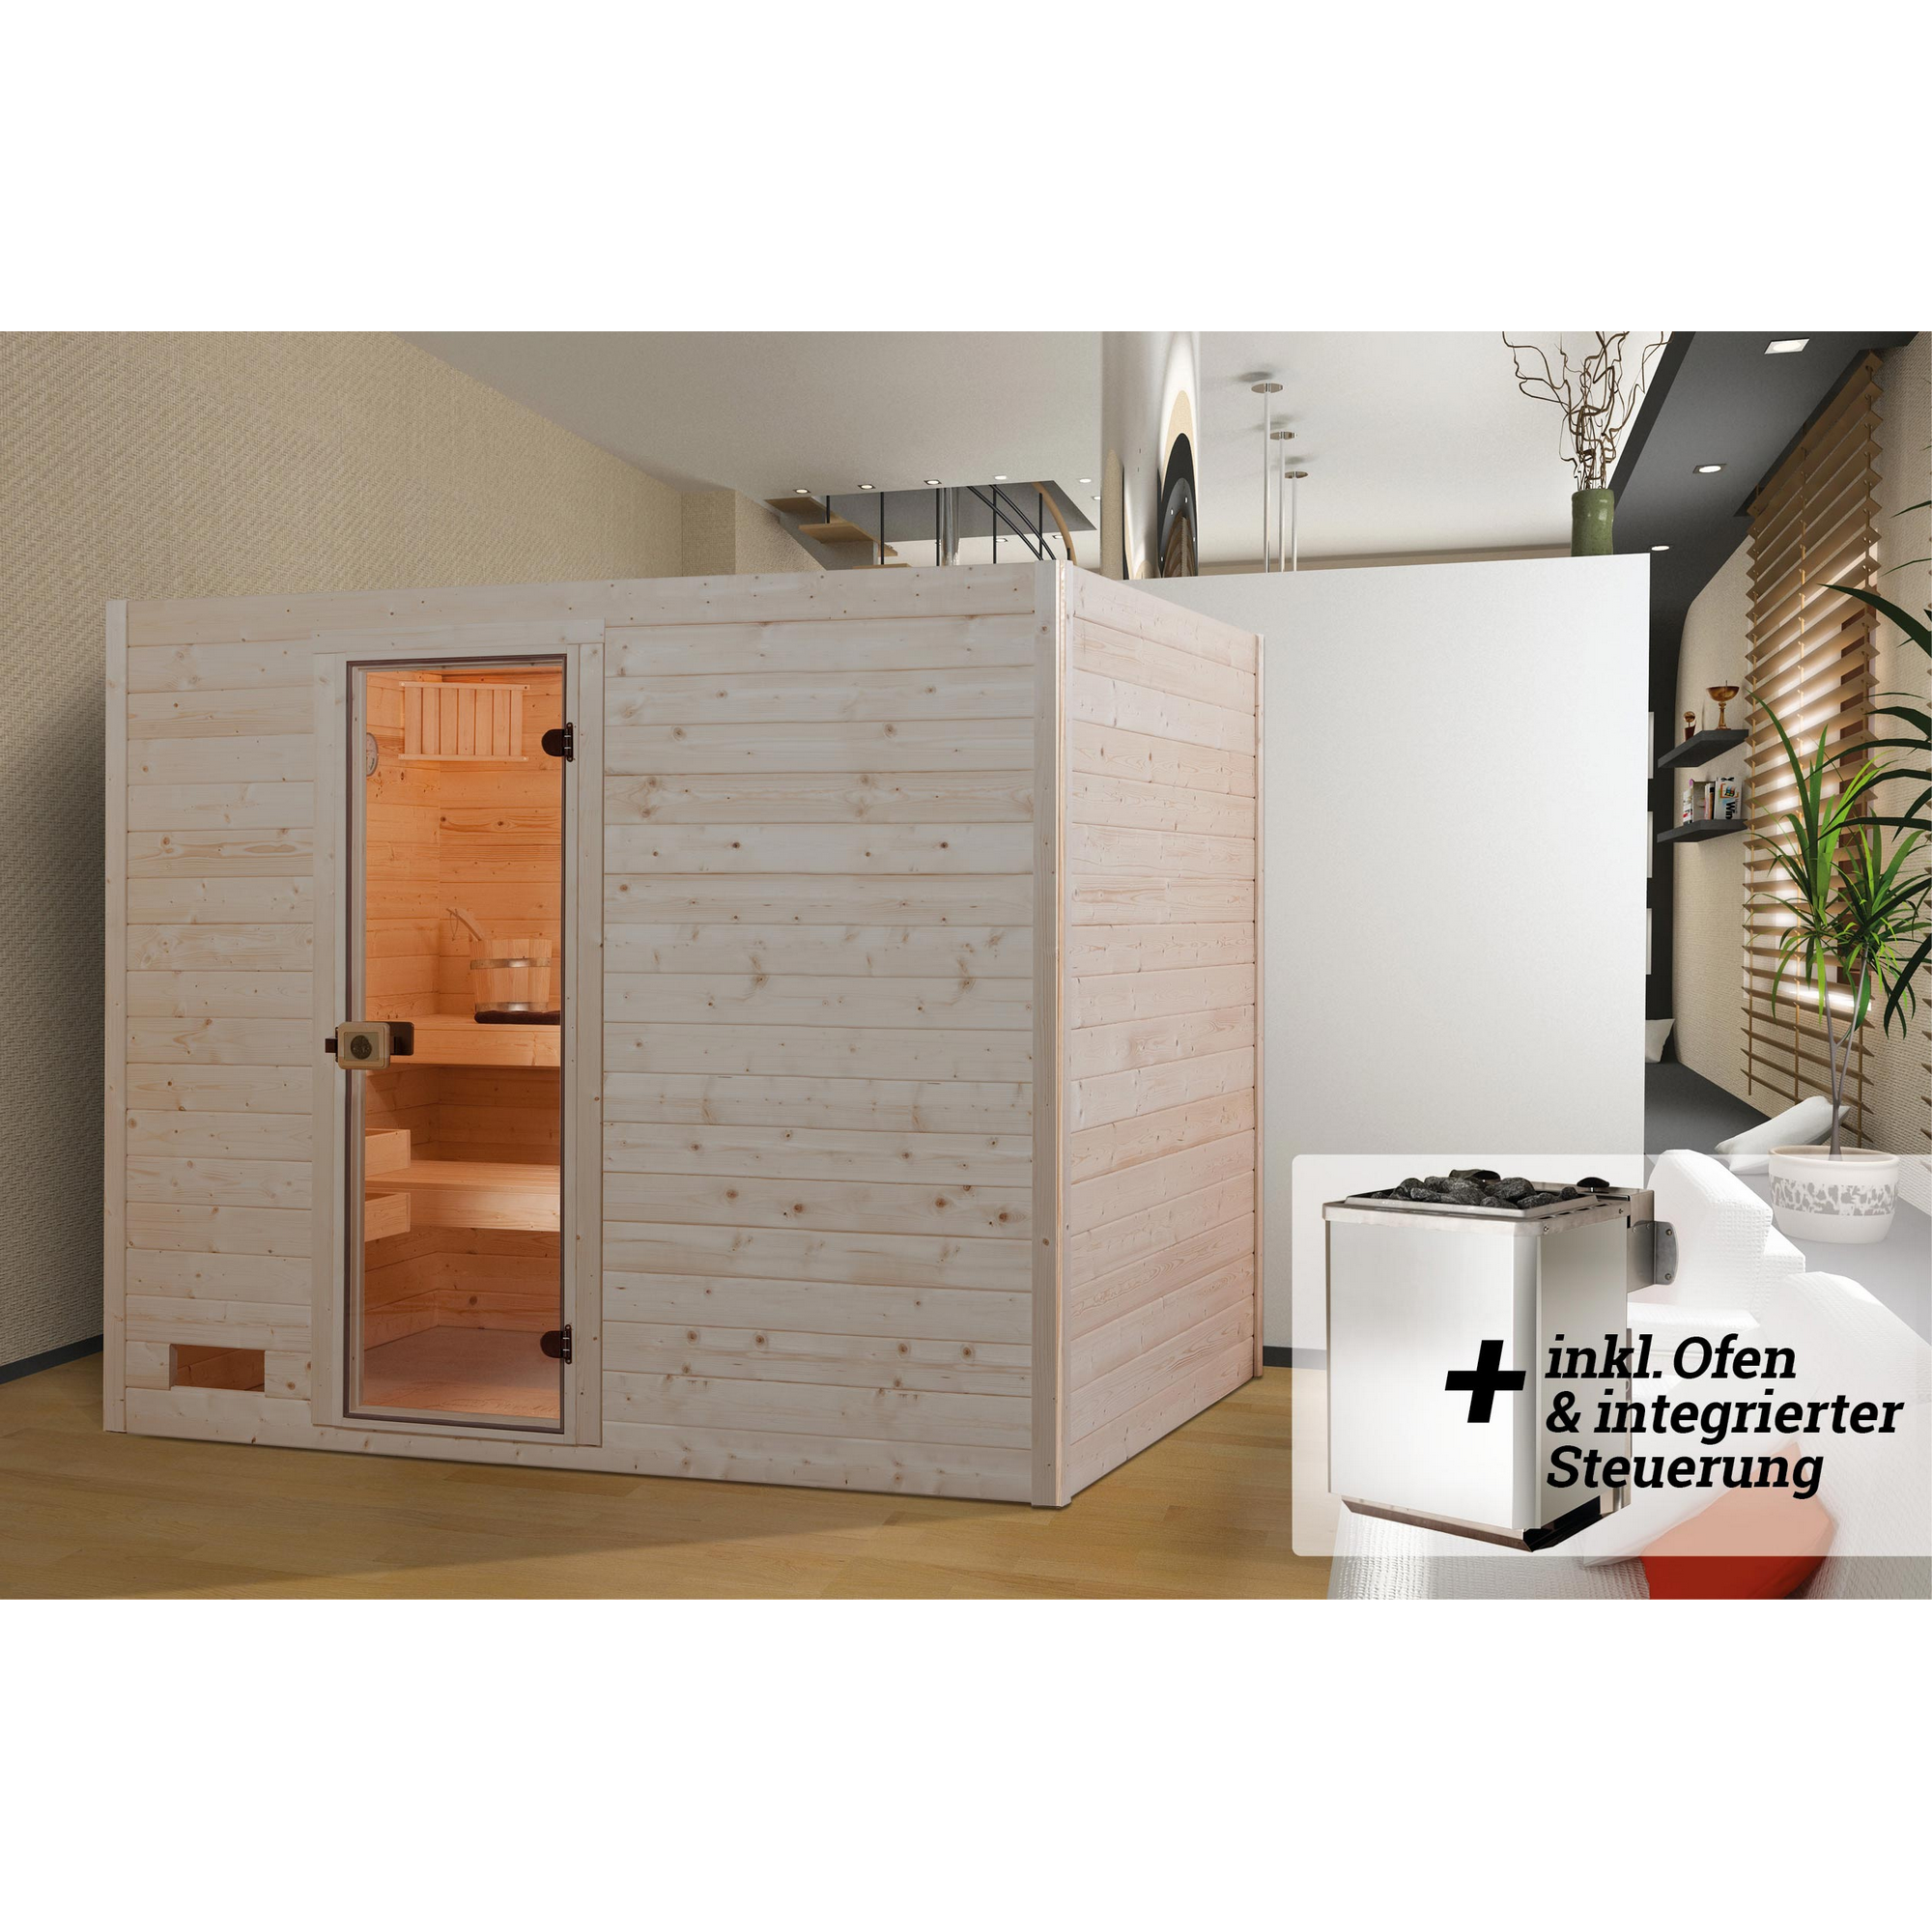 Massivholz-Sauna 'Valida 4' mit 9 kW K-Ofenset, integrierter Steuerung, Glastür 237 x 187 x 203,5 cm + product picture